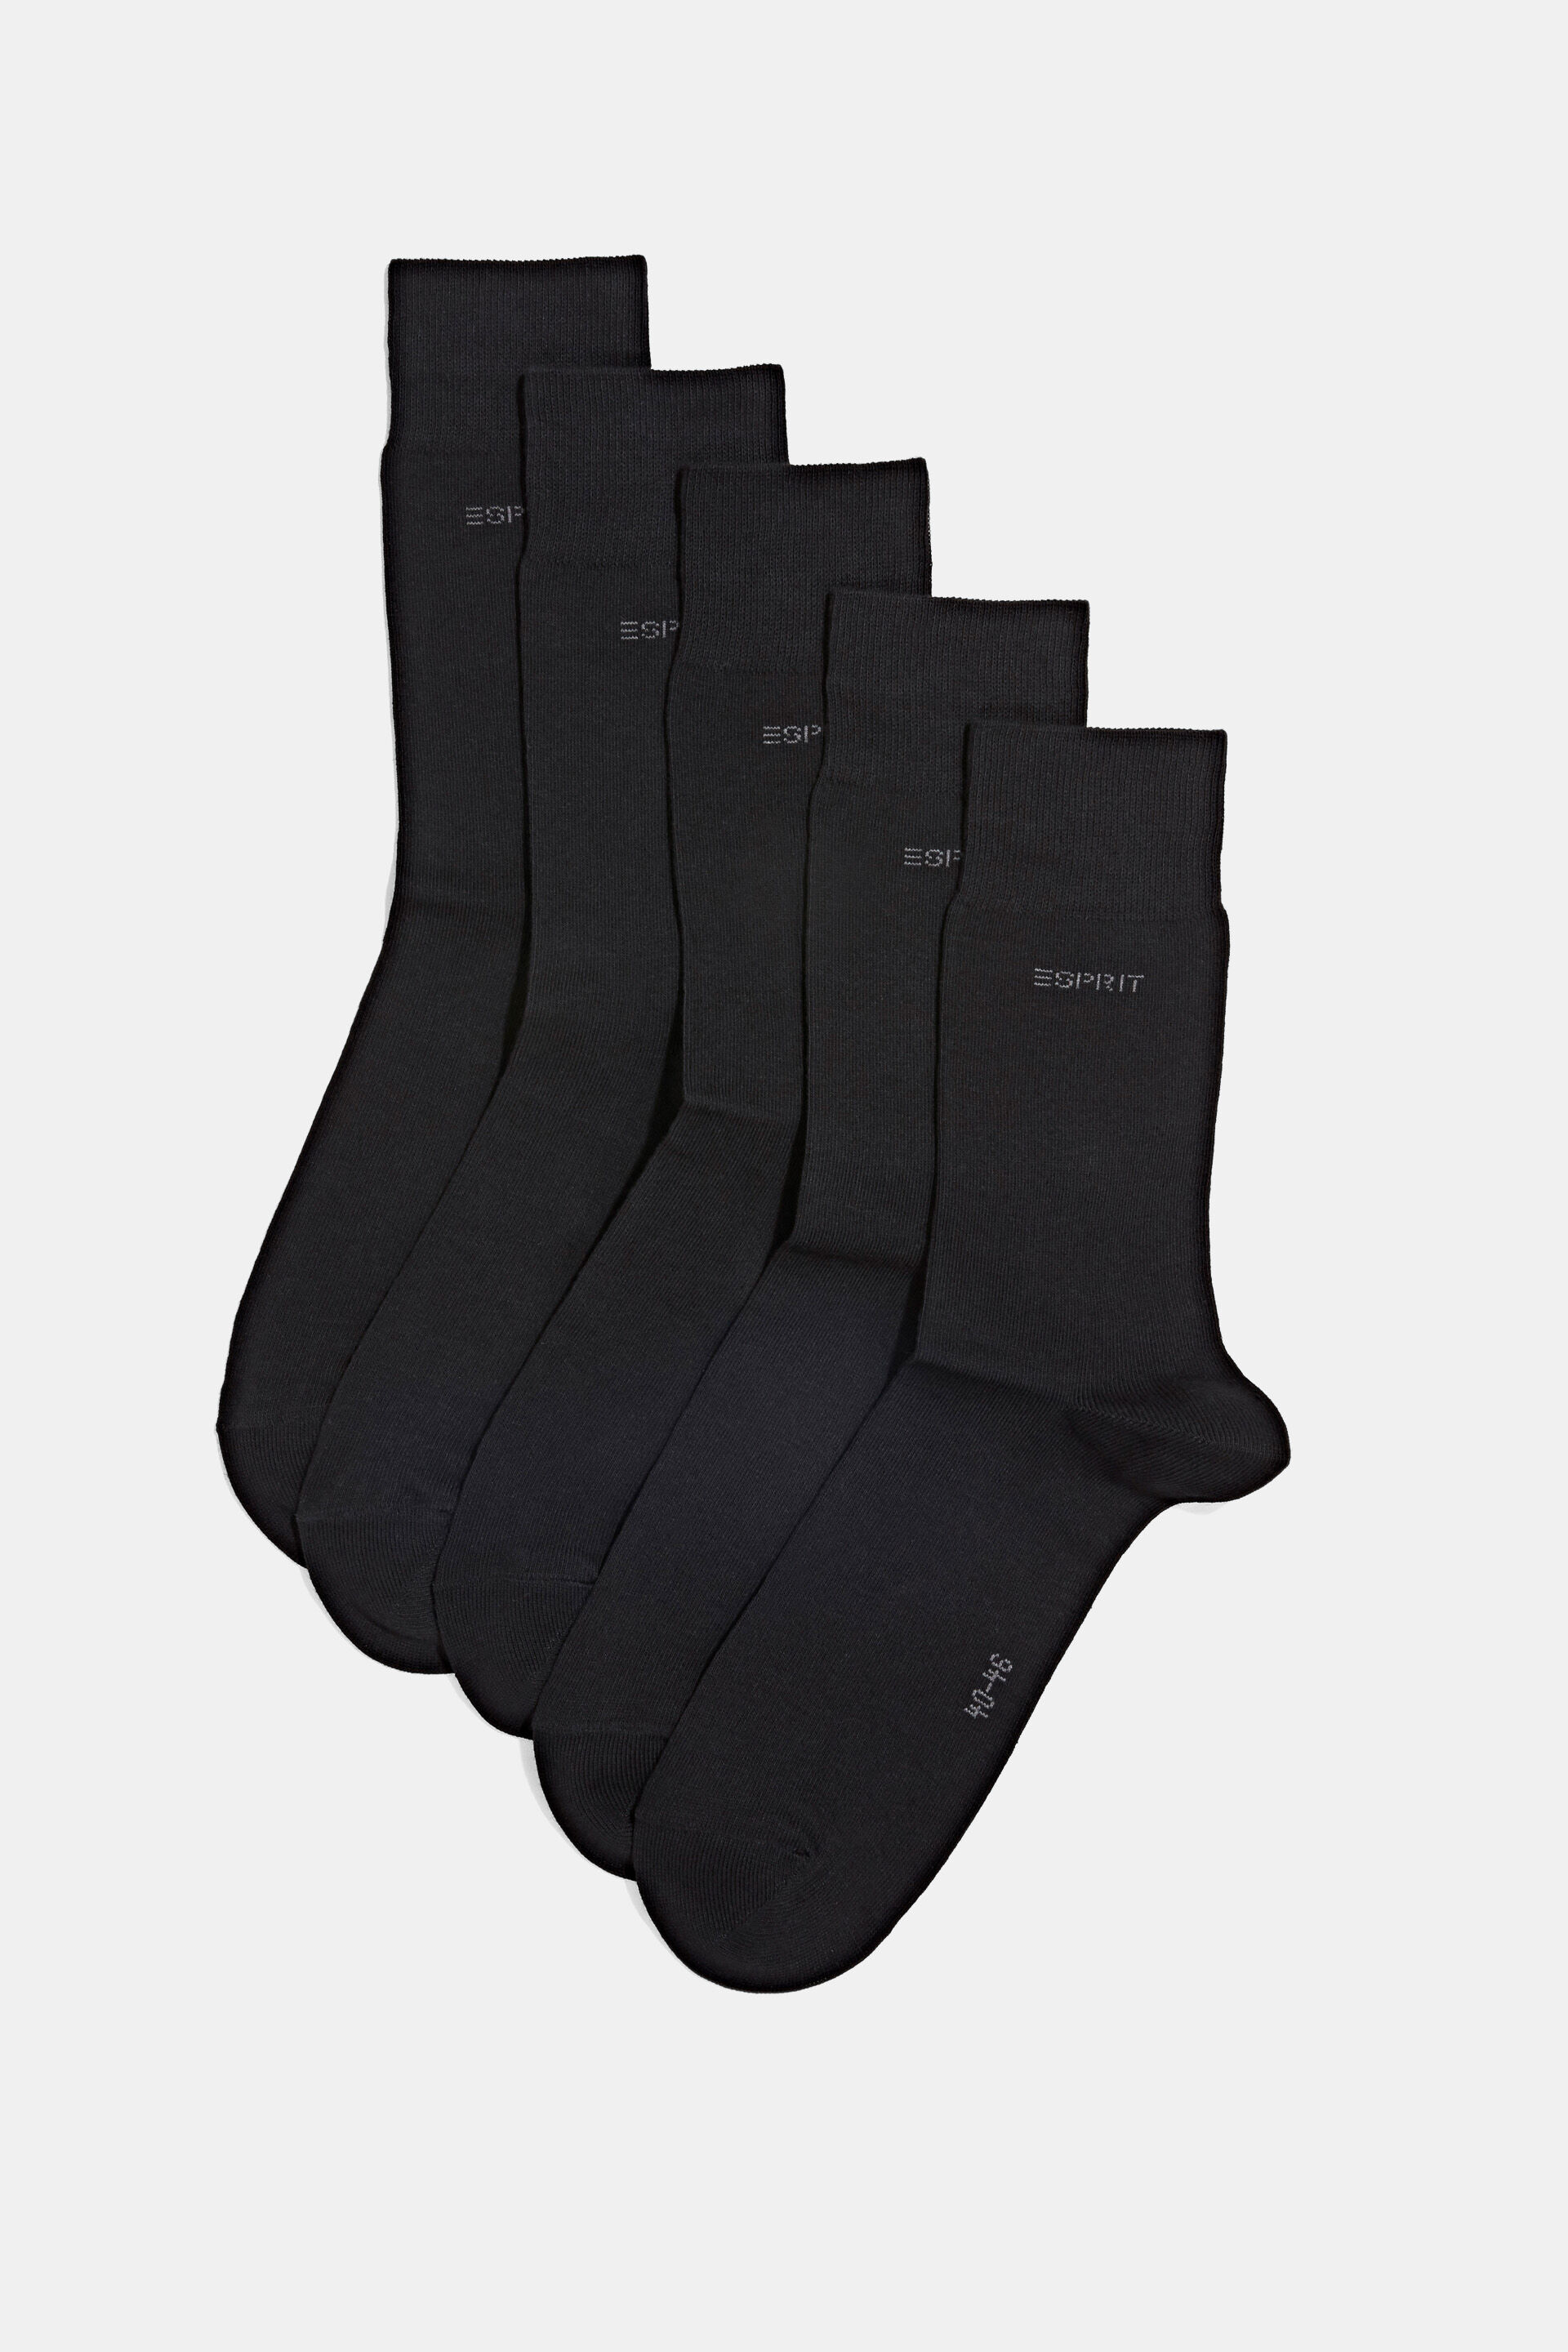 Esprit Mode 5er-Pack Socken aus Bio-Baumwollmischung